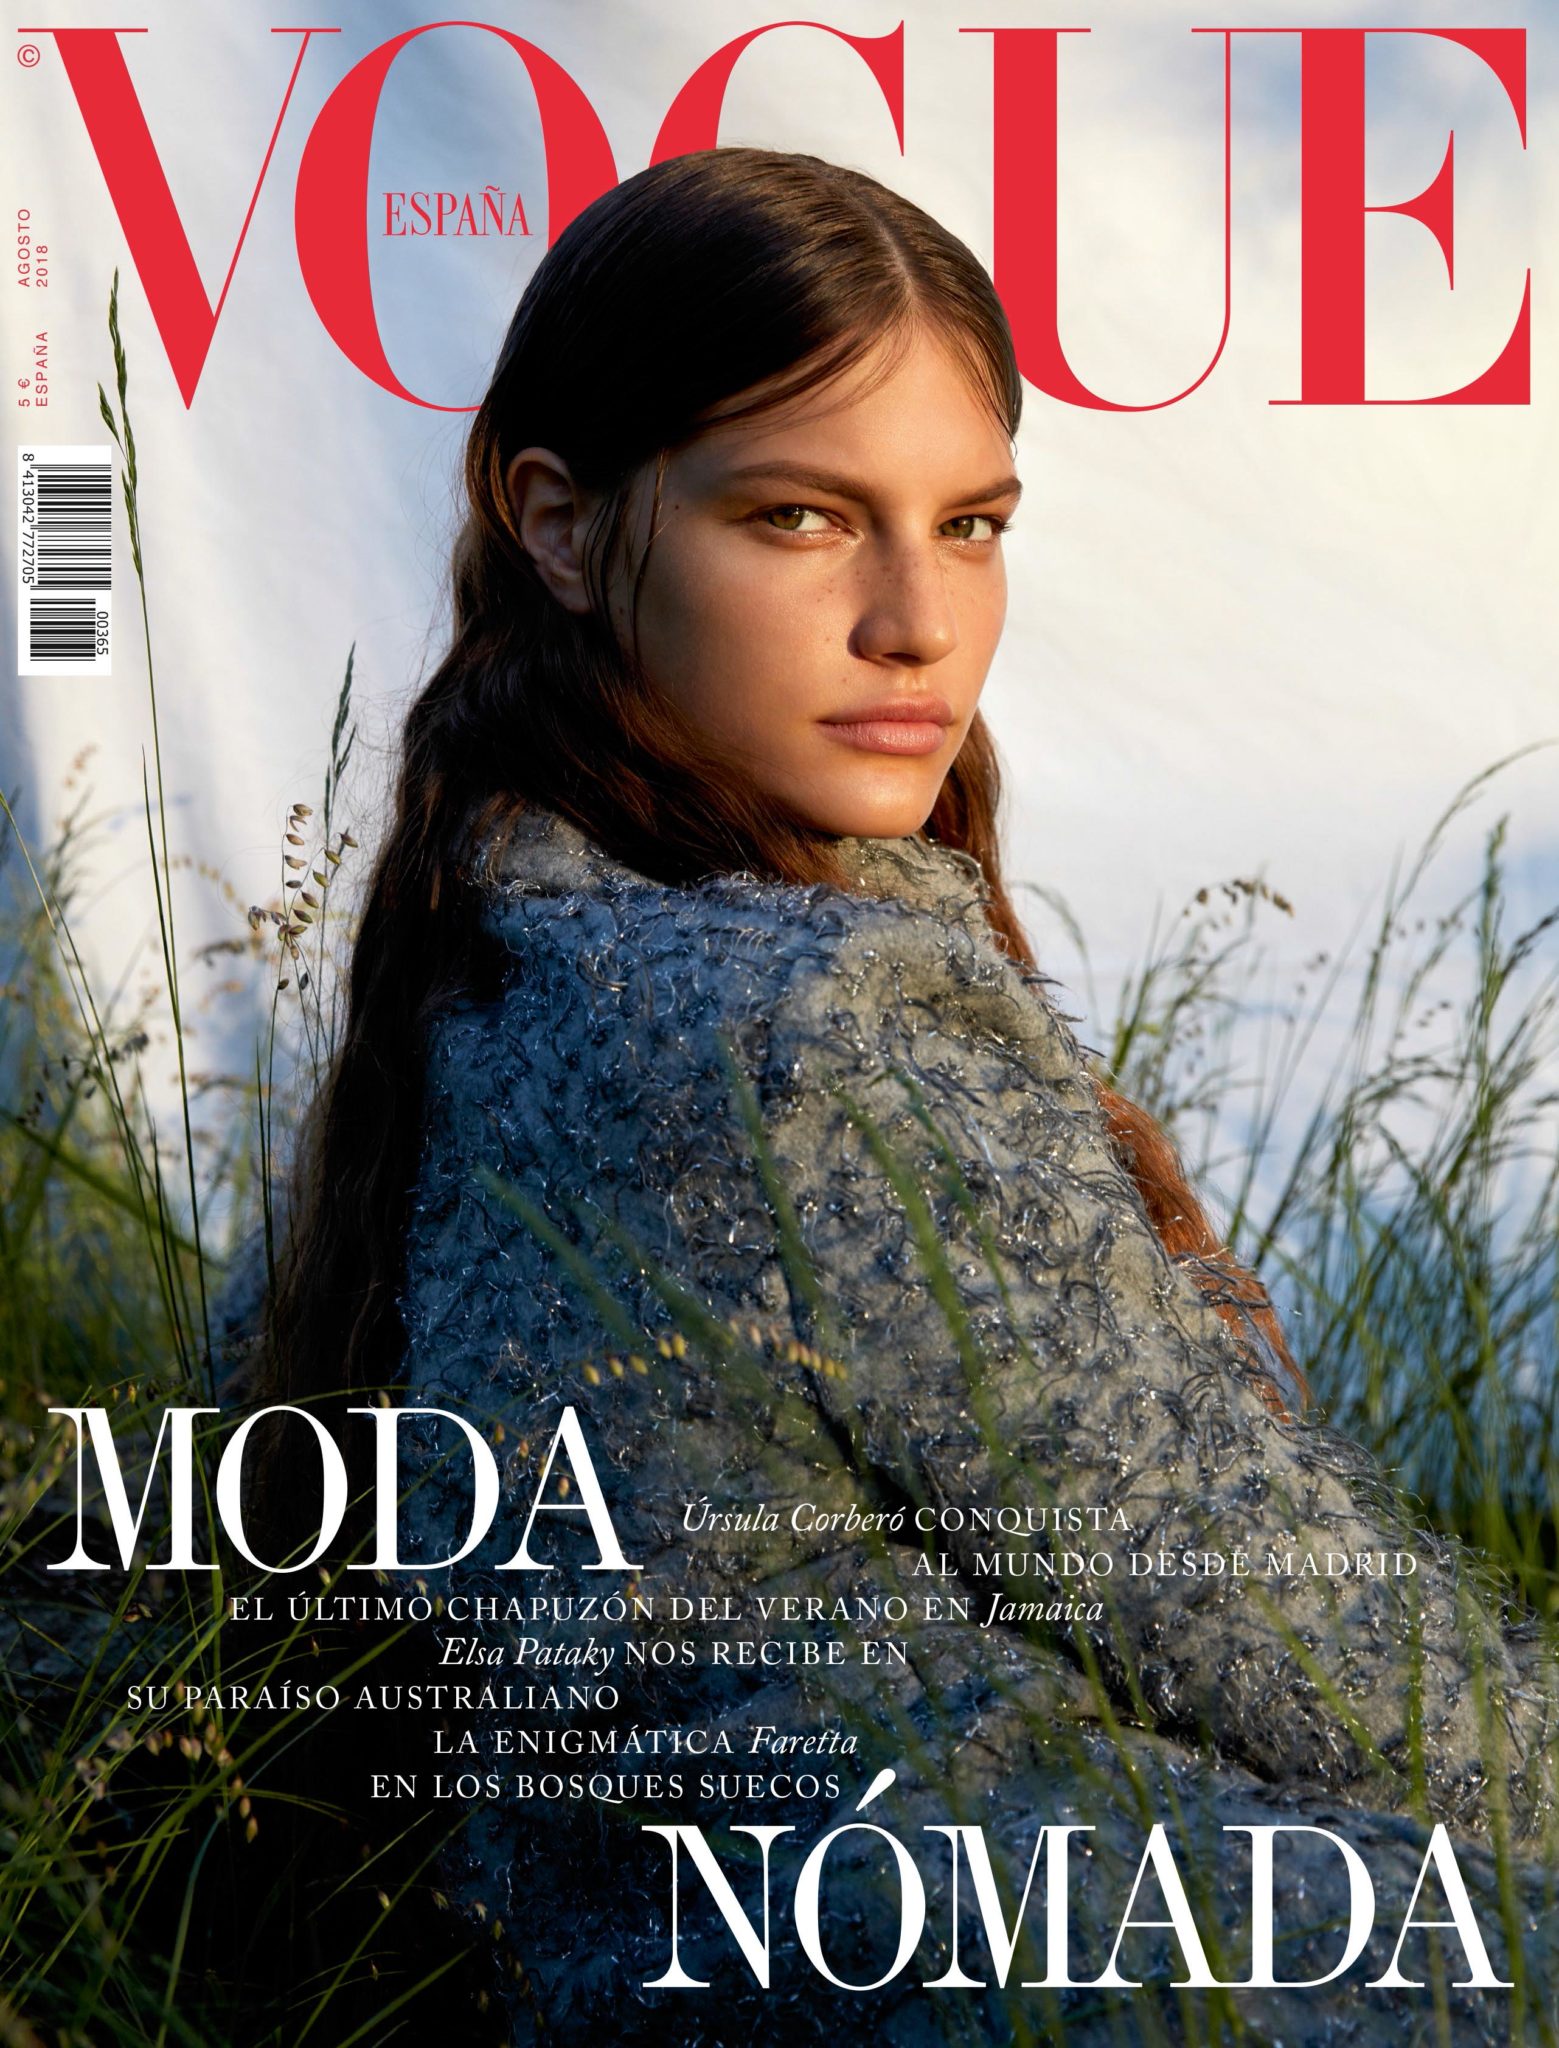 El espíritu nómada invade el número de agosto de Vogue España - Periódico  PublicidAD - Periódico de Publicidad, Comunicación Comercial y Marketing